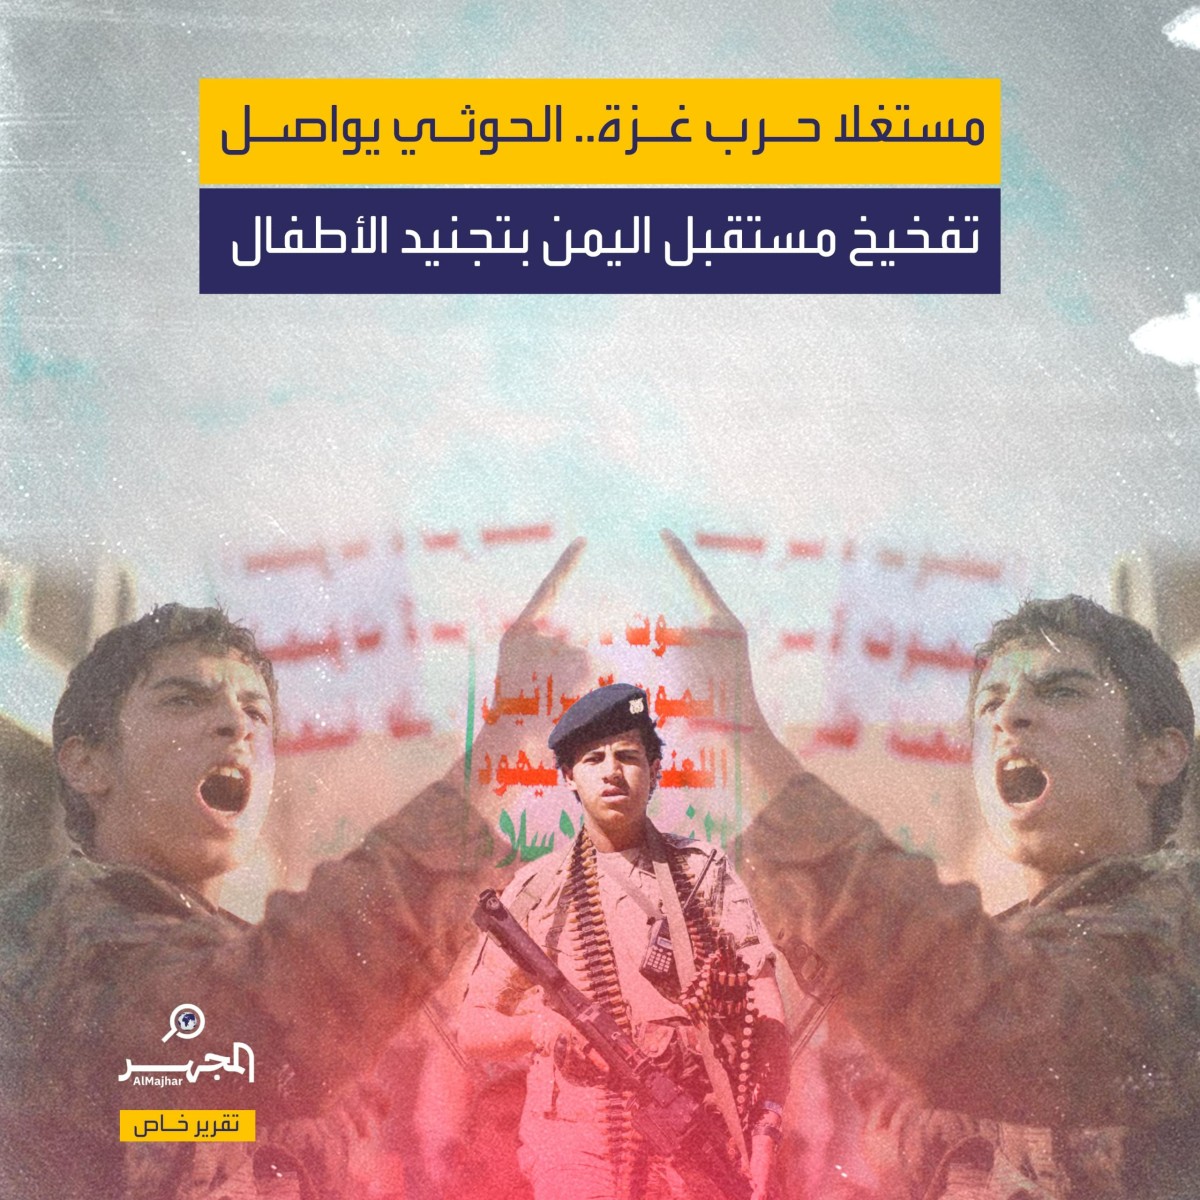 مستغلا حرب غزة.. الحوثي يواصل تفخيخ مستقبل اليمن بتجنيد الأطفال (تقرير خاص)